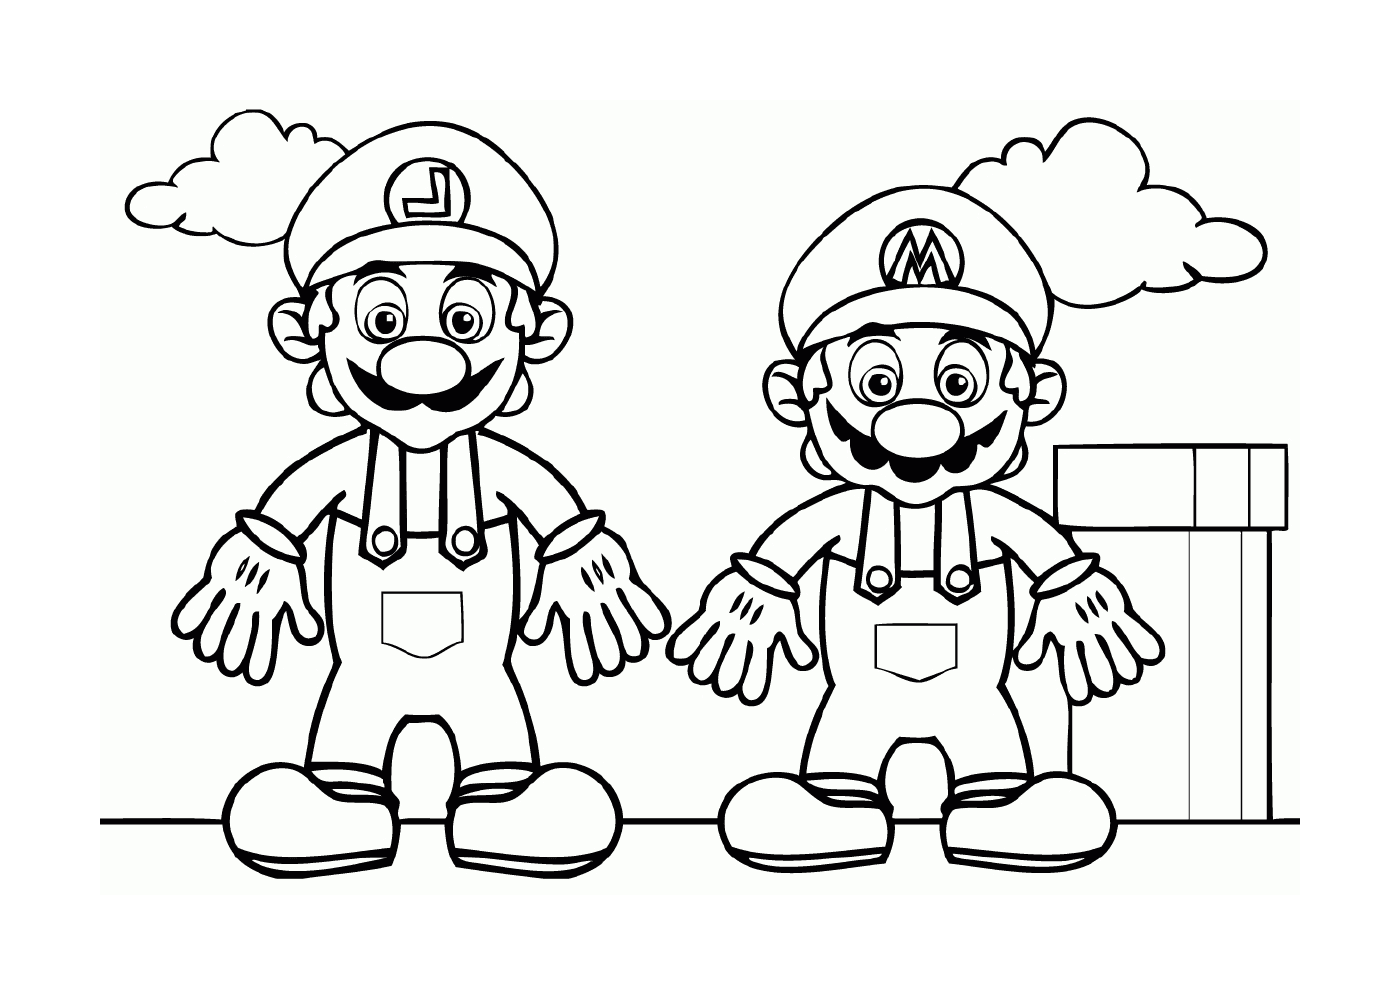  Mario und Luigi, zwei berühmte Brüder 